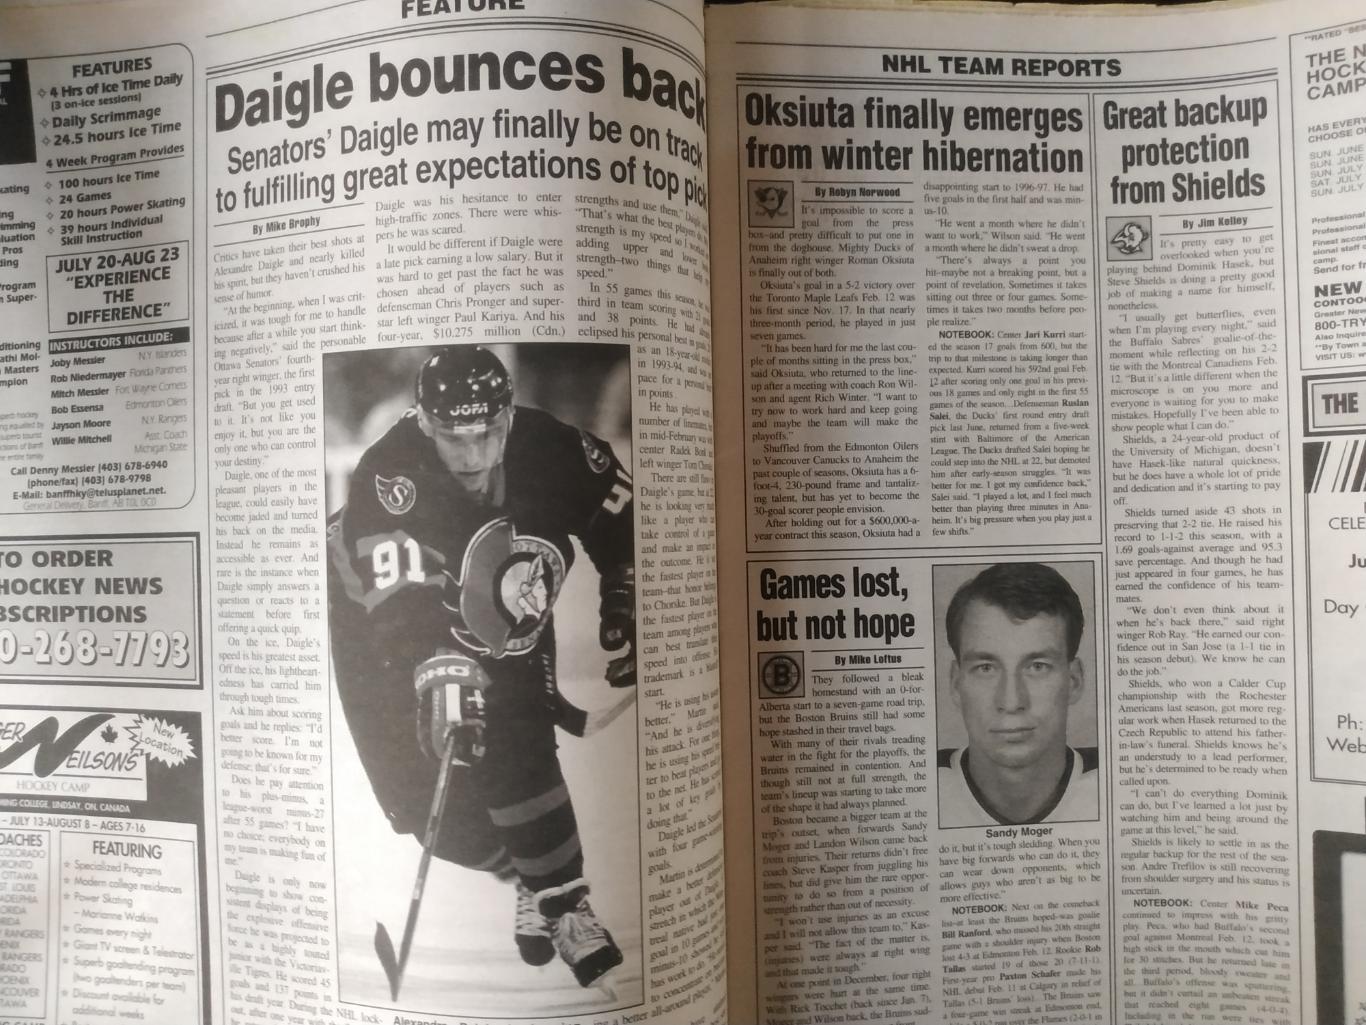 ХОККЕЙ ЖУРНАЛ ЕЖЕНЕДЕЛЬНИК НХЛ НОВОСТИ ХОККЕЯ NHL MAR.7 1997 THE HOCKEY NEWS 3